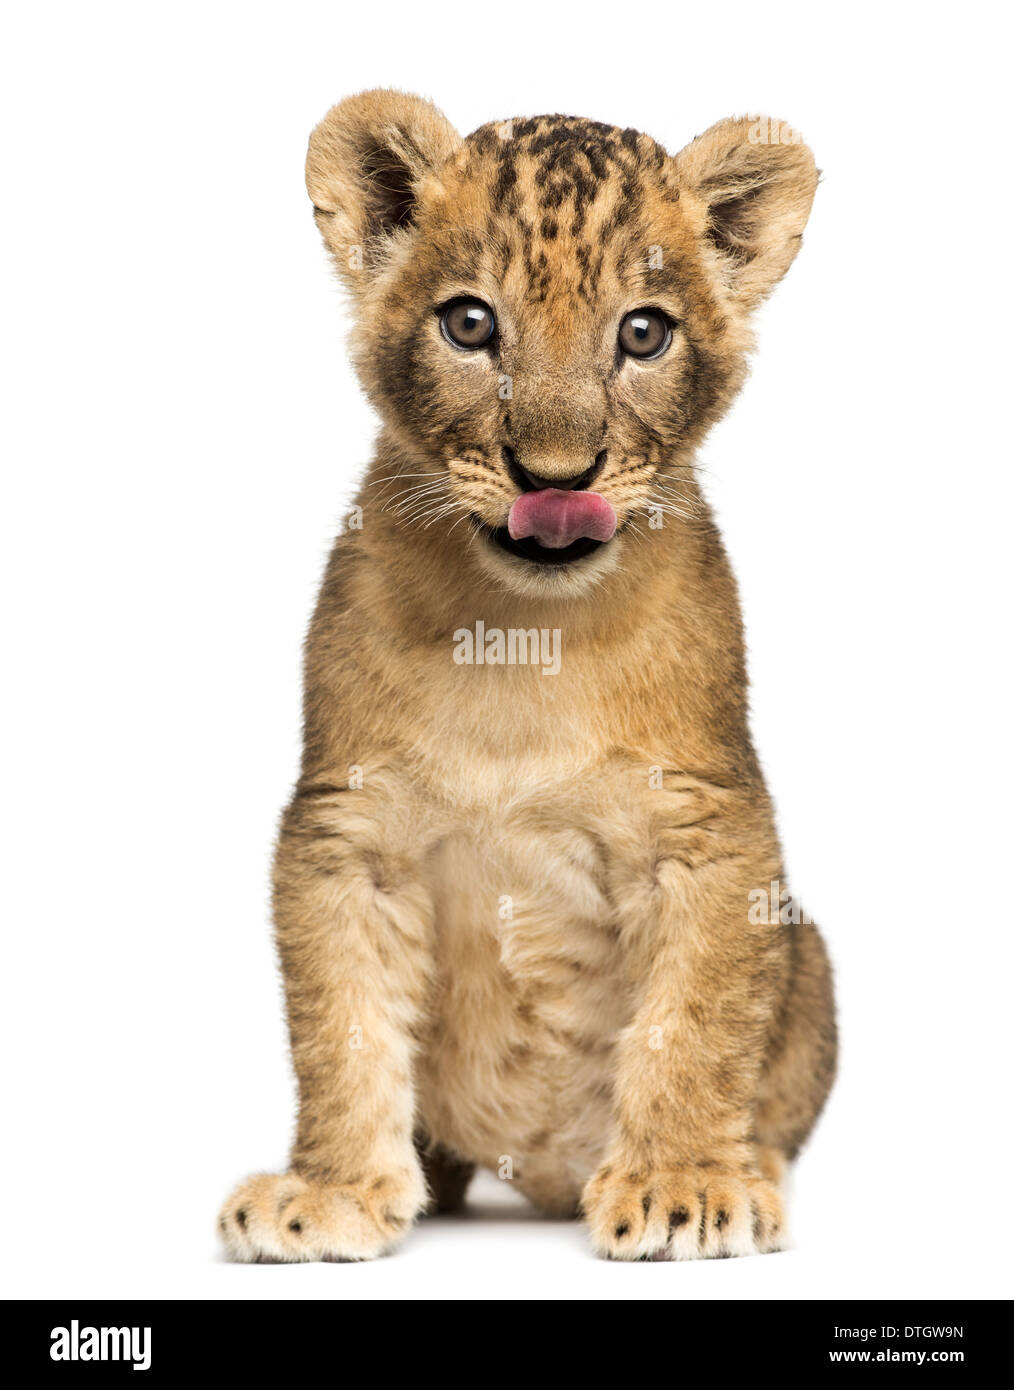 Lion cub seduta, leccare, 7 settimane di età, contro uno sfondo bianco Foto Stock